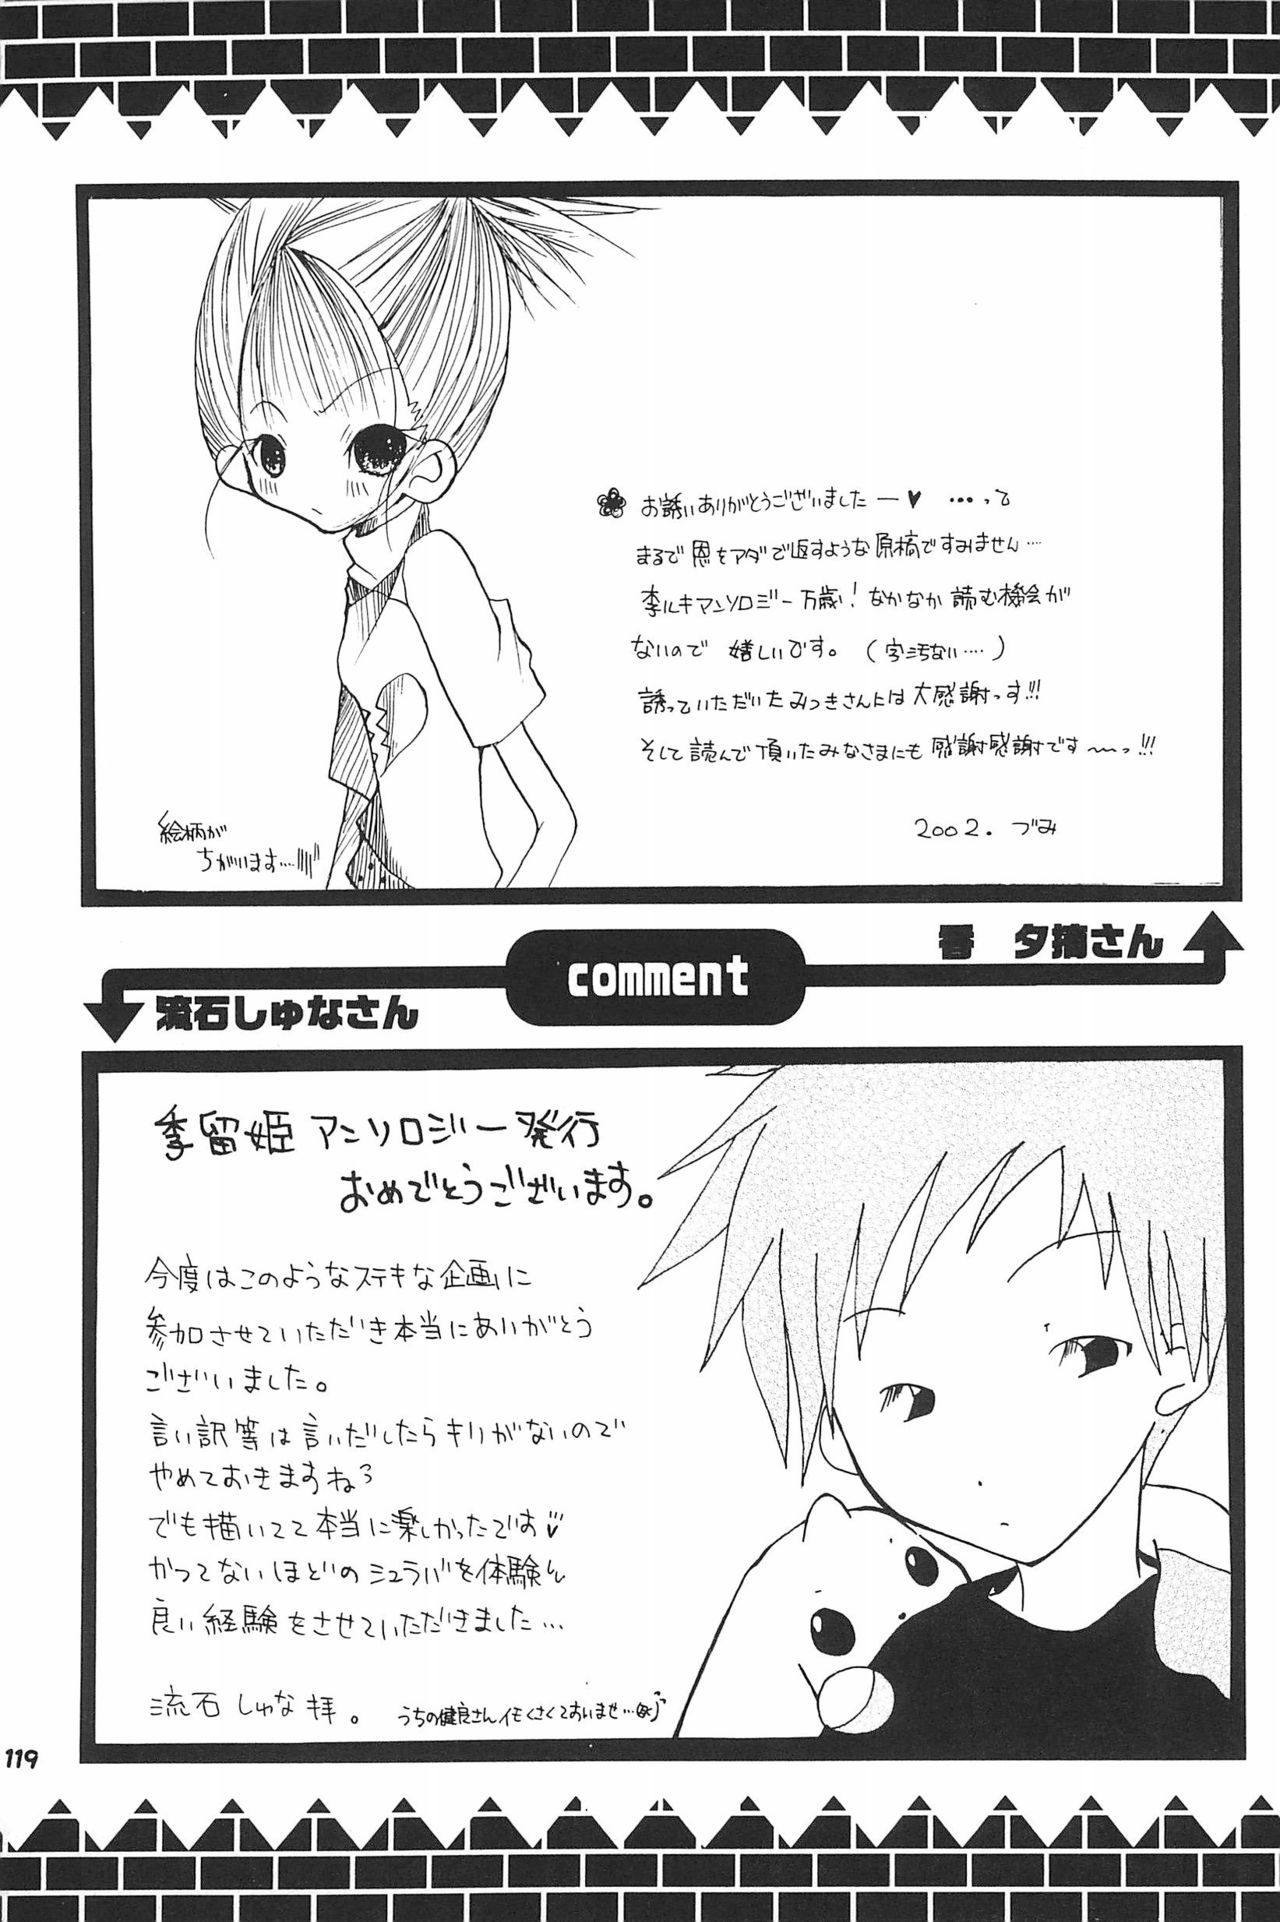 (SC15) [LeeRuki Anthology Jikkou Iinkai (Various)] LeeRuki Anthology J&R REPORT (Digimon Tamers) 120